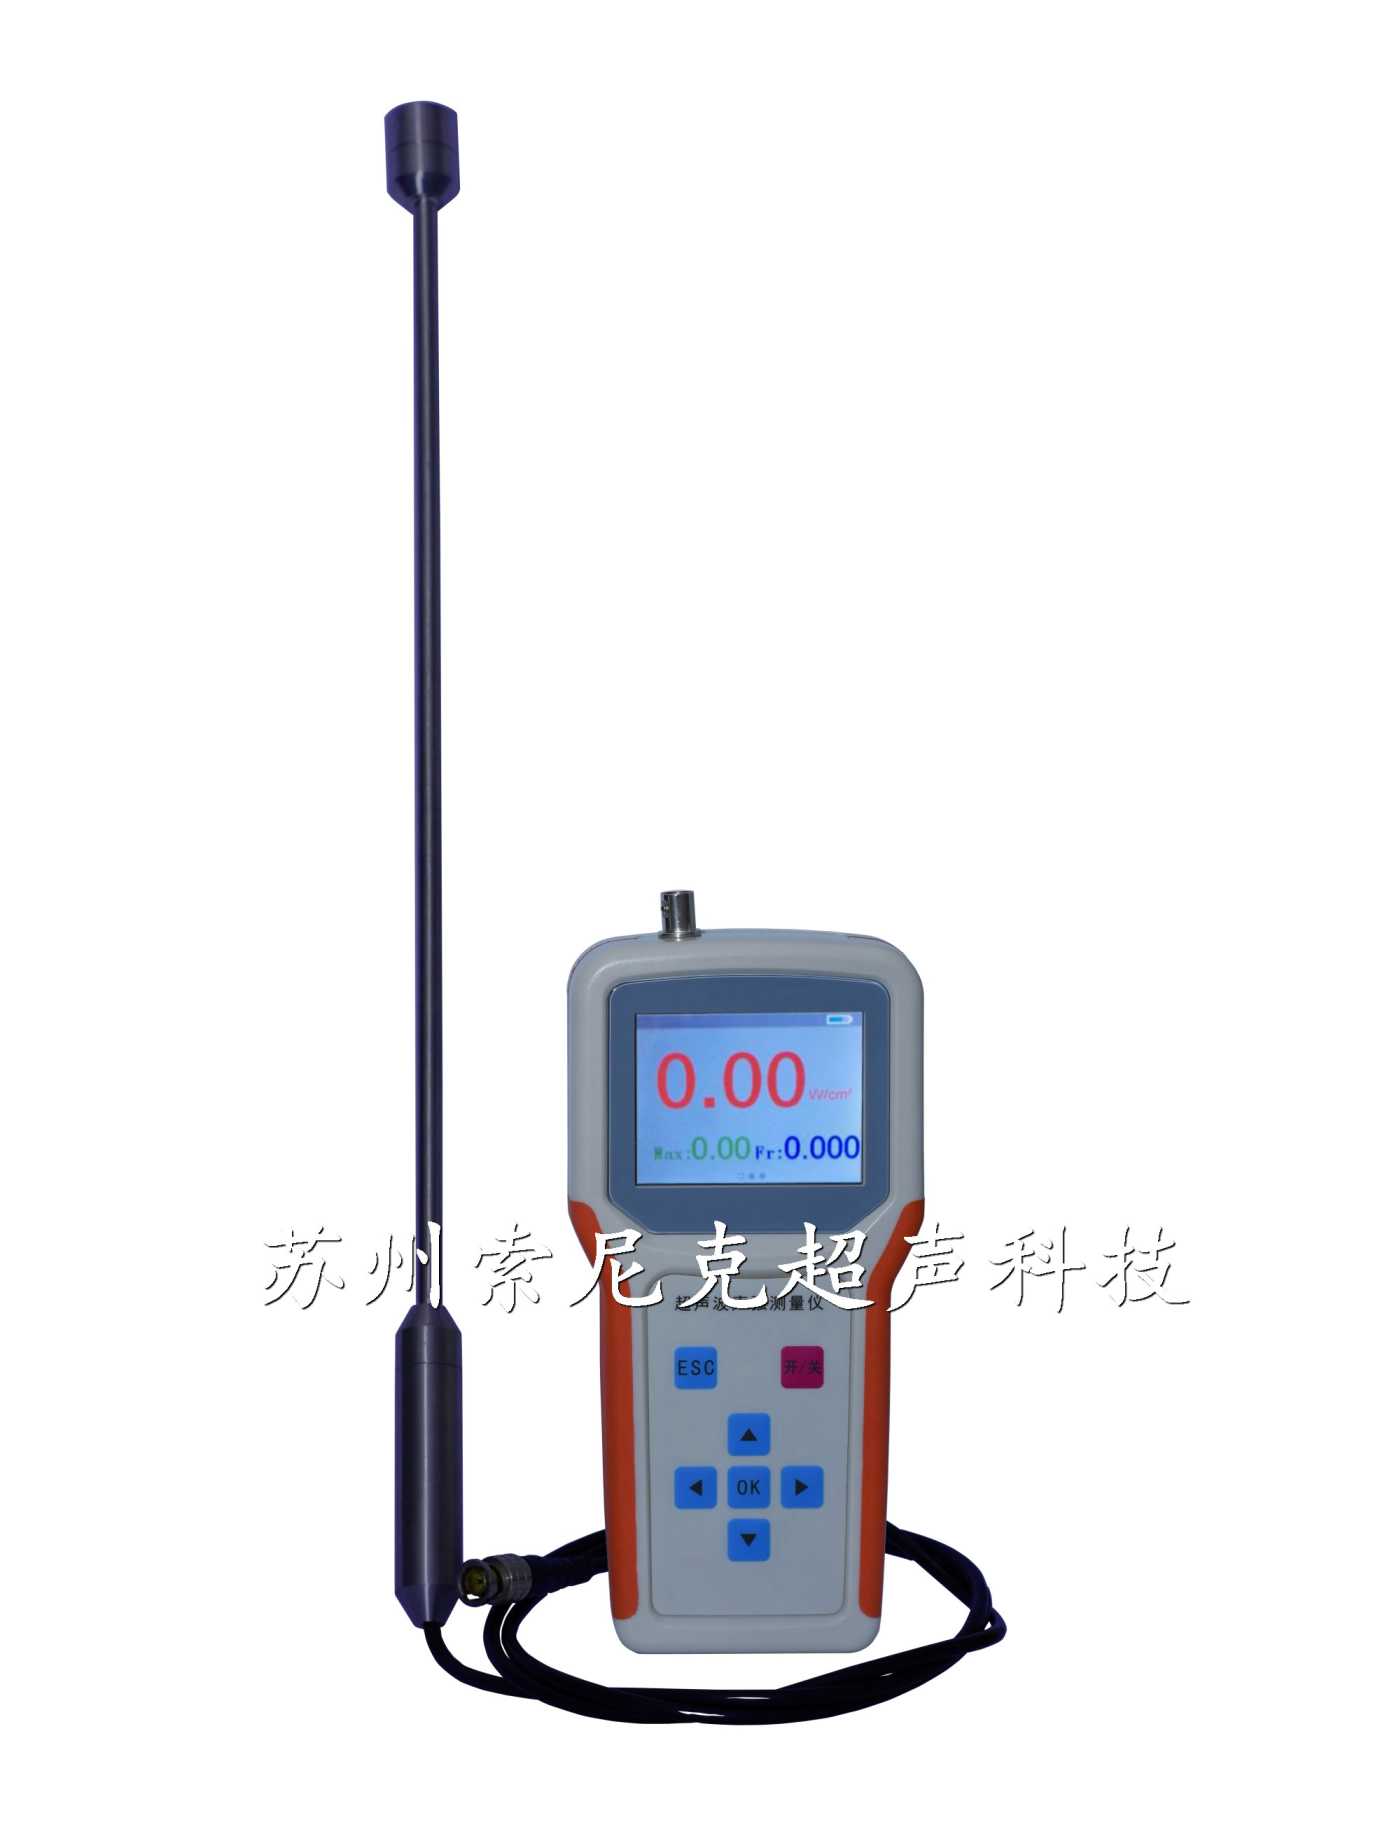 苏州索尼克超声波音压计,超声波音压计参数,超声波音压计使用方法